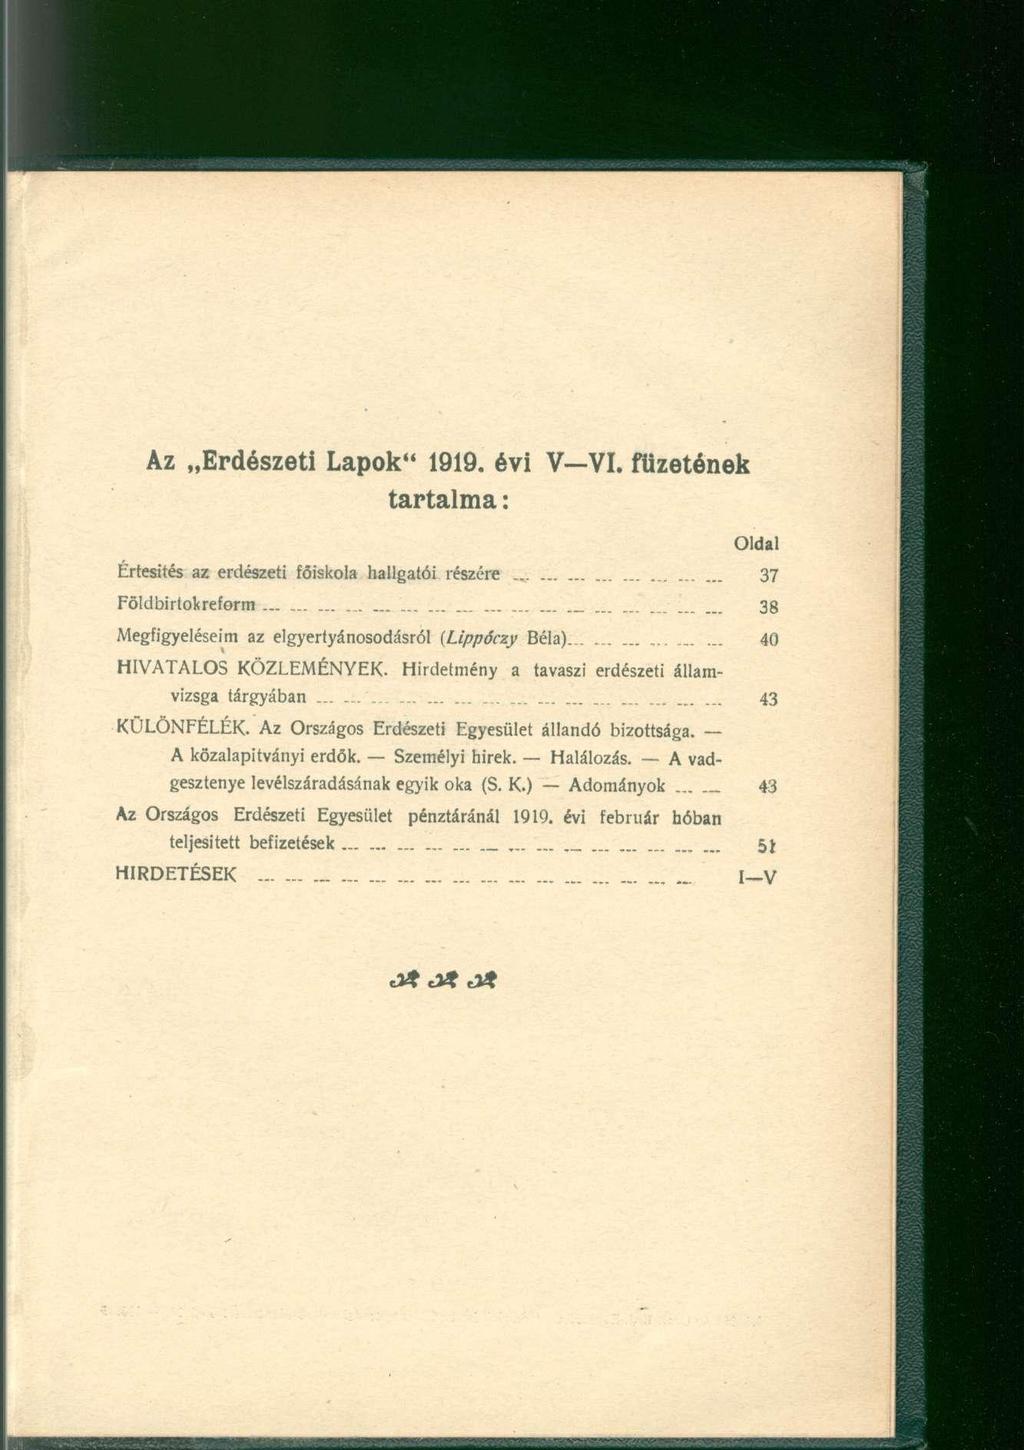 Az Erdészeti Lapok" 1919. évi V VI. füzetének tartalma: Oldal Értesités az erdészeti főiskola hallgatói részére 37 Földbirtokreform... 38 Megfigyeléseim az elgyertyánosodásról (Lippóczy Béla)._.